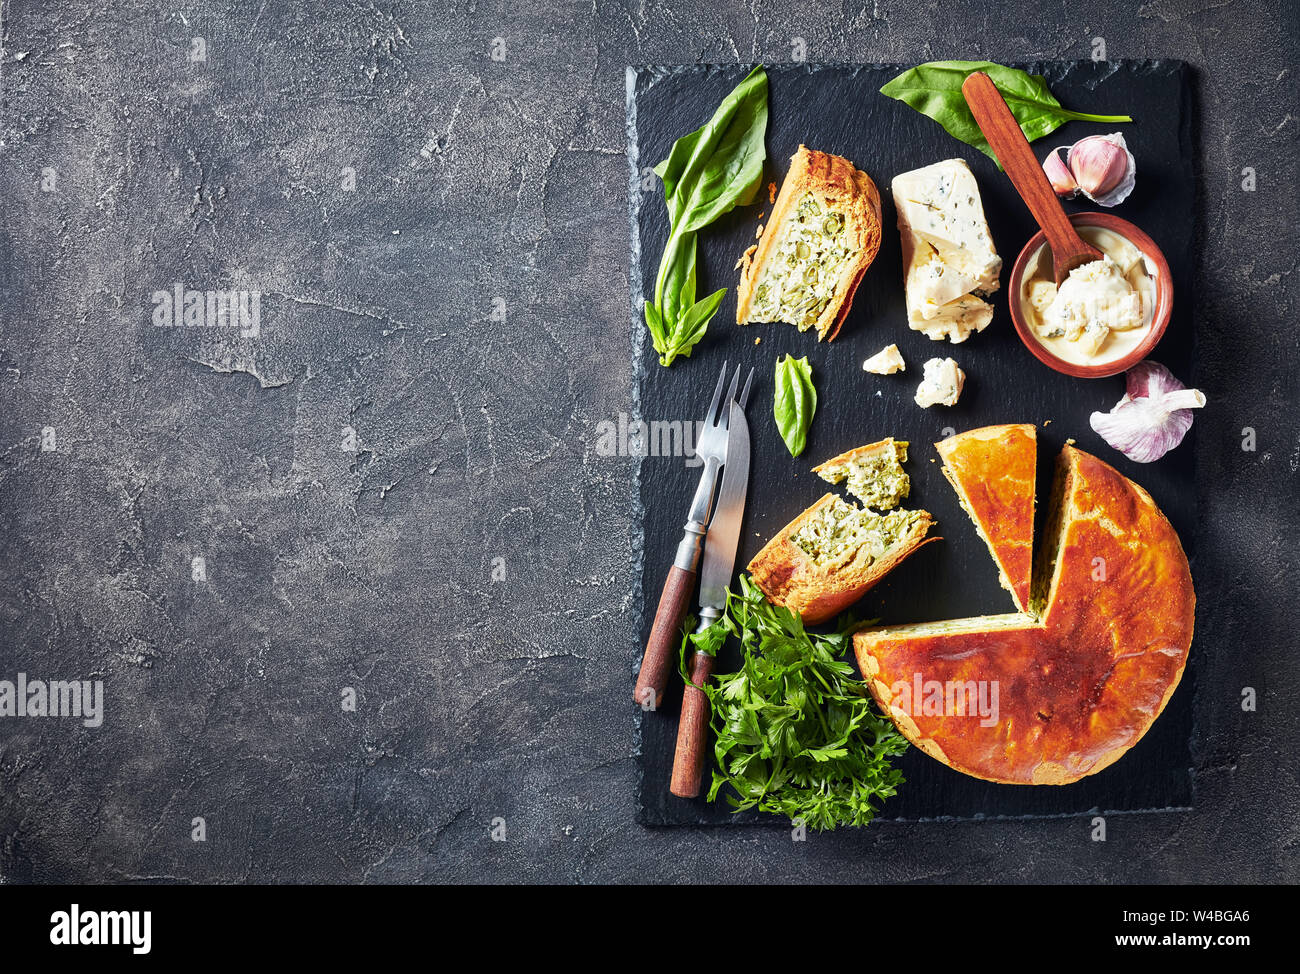 Haricots verts et épinards Tarte au fromage bleu ardoise noire en tranches sur un plateau avec crème au fromage bleu sauce dans un bol sur une table, vue de dessus, copiez Banque D'Images